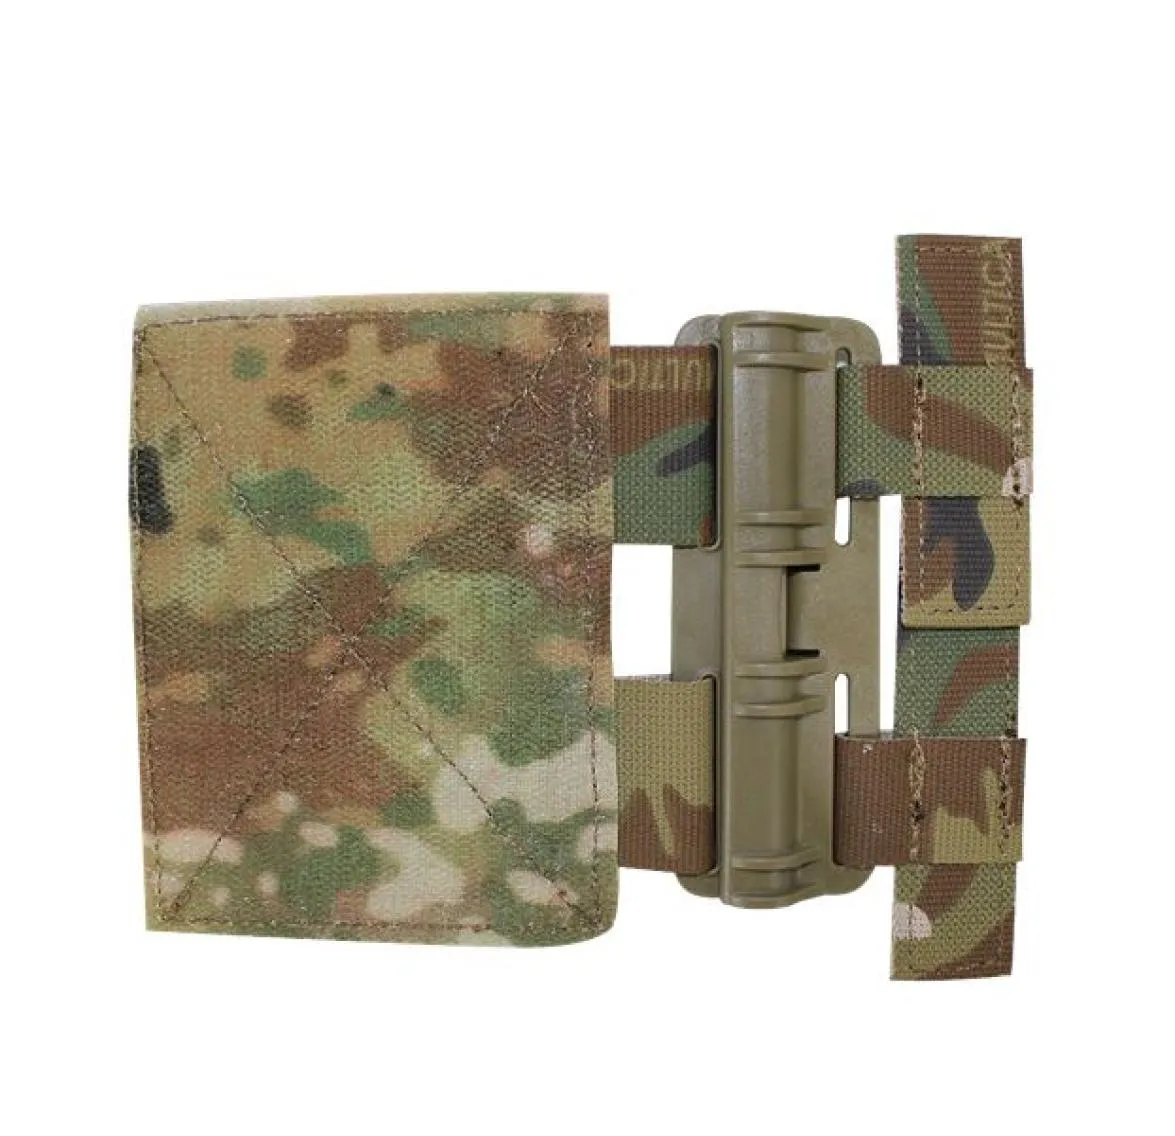 JPC CPC NCPC 6094 420 Vest Tactical Vest Universal MOLLE Quick Removal Buckle Set Quick Release System Set3959650